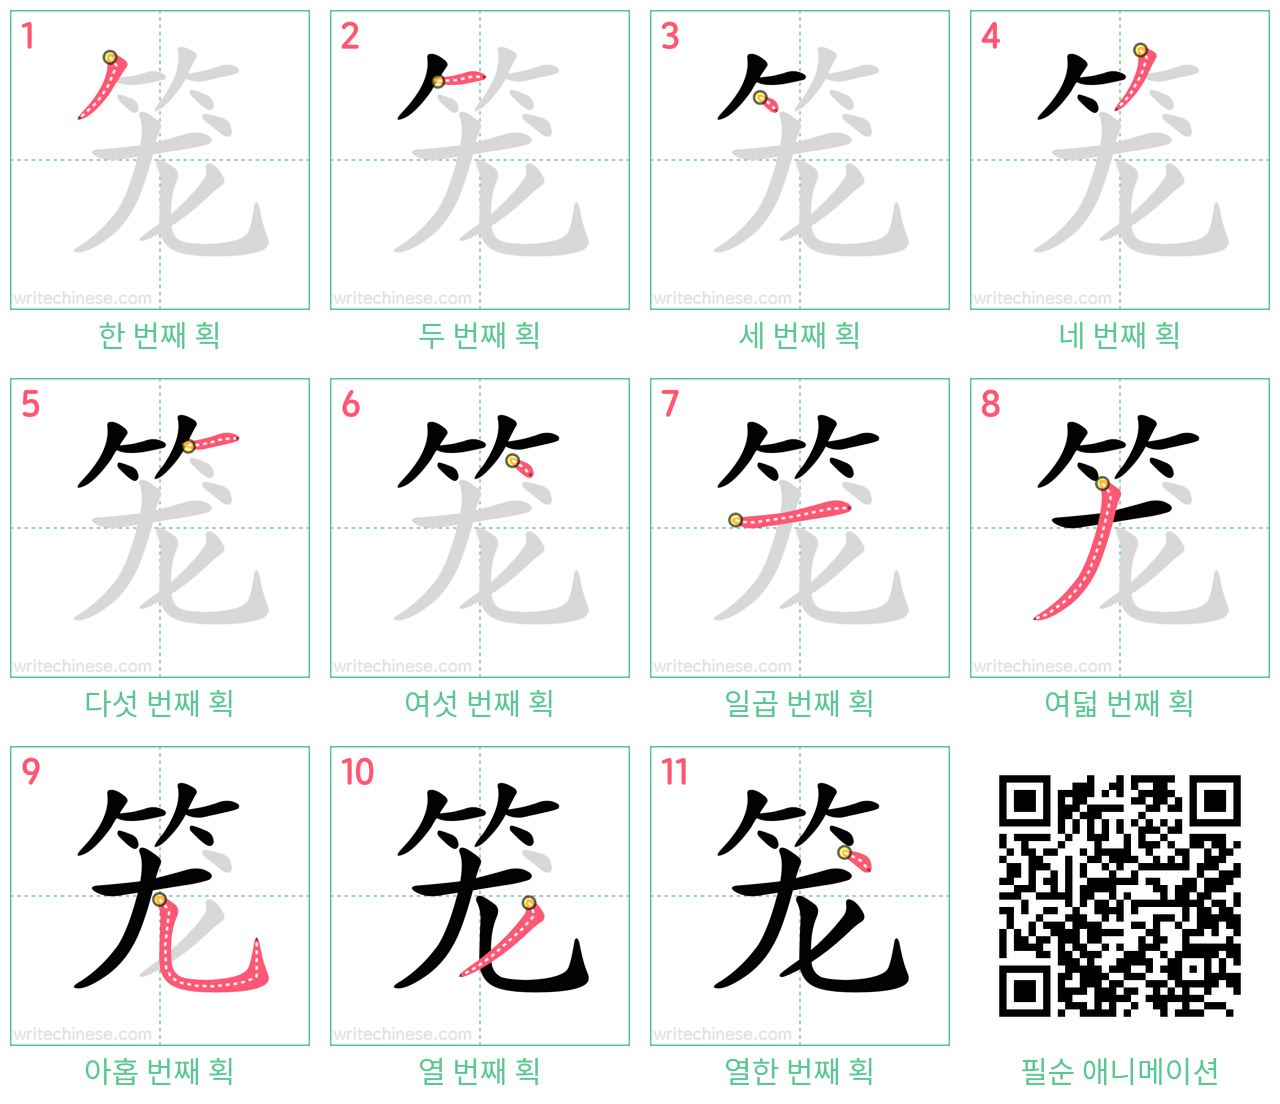 笼 step-by-step stroke order diagrams